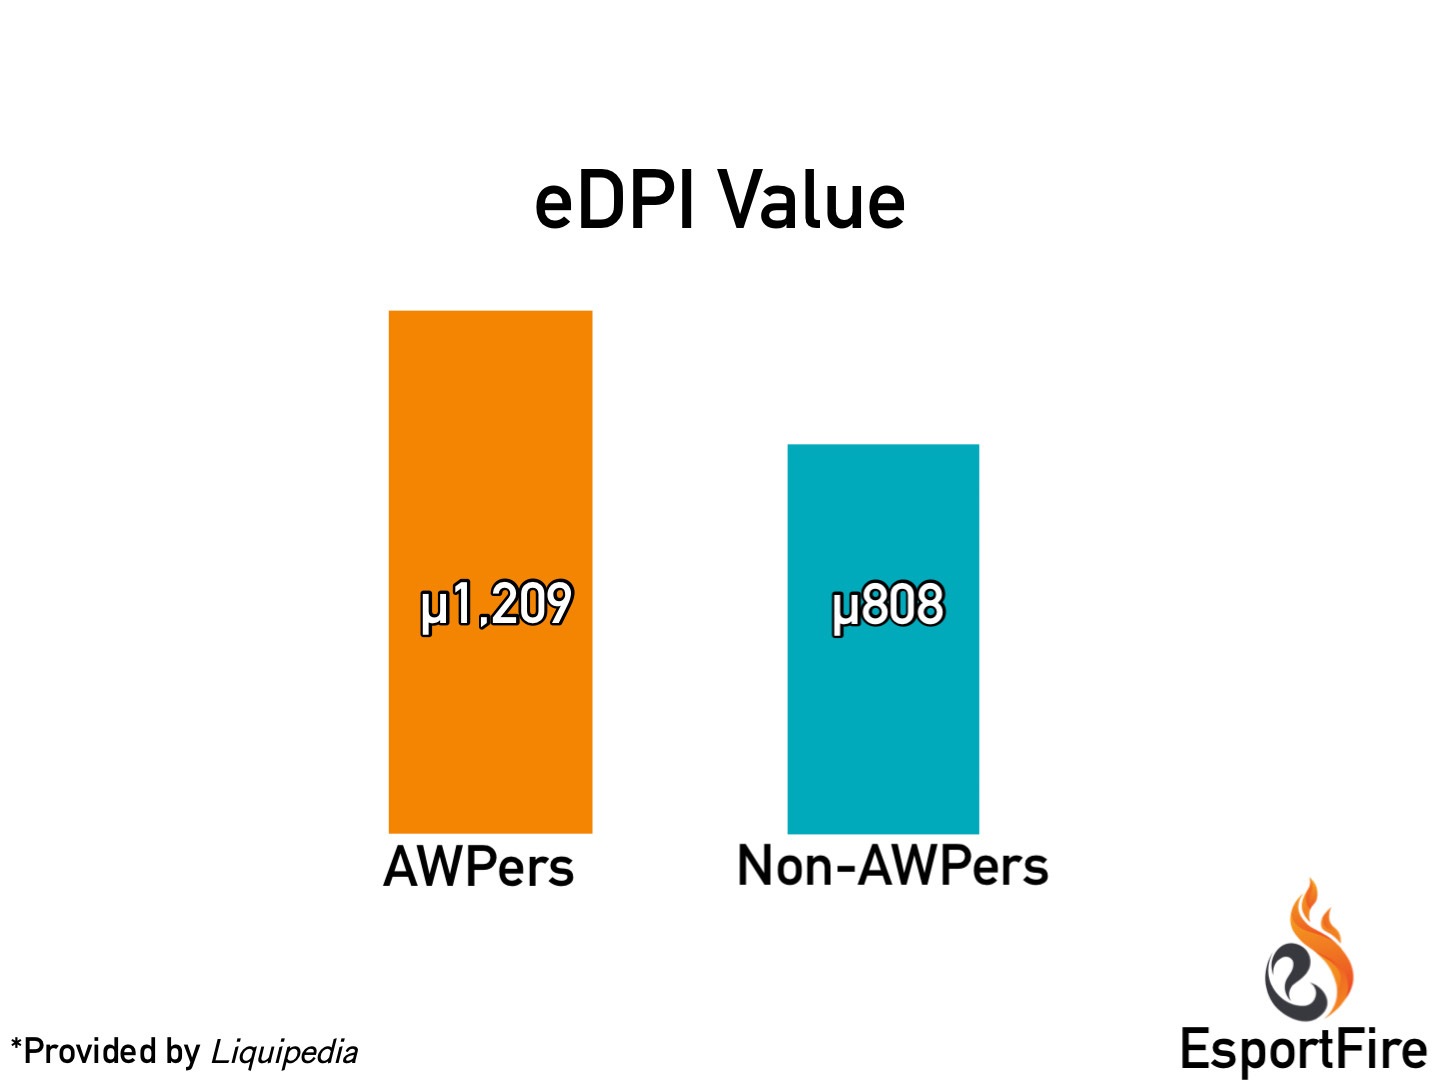 Average eDPI